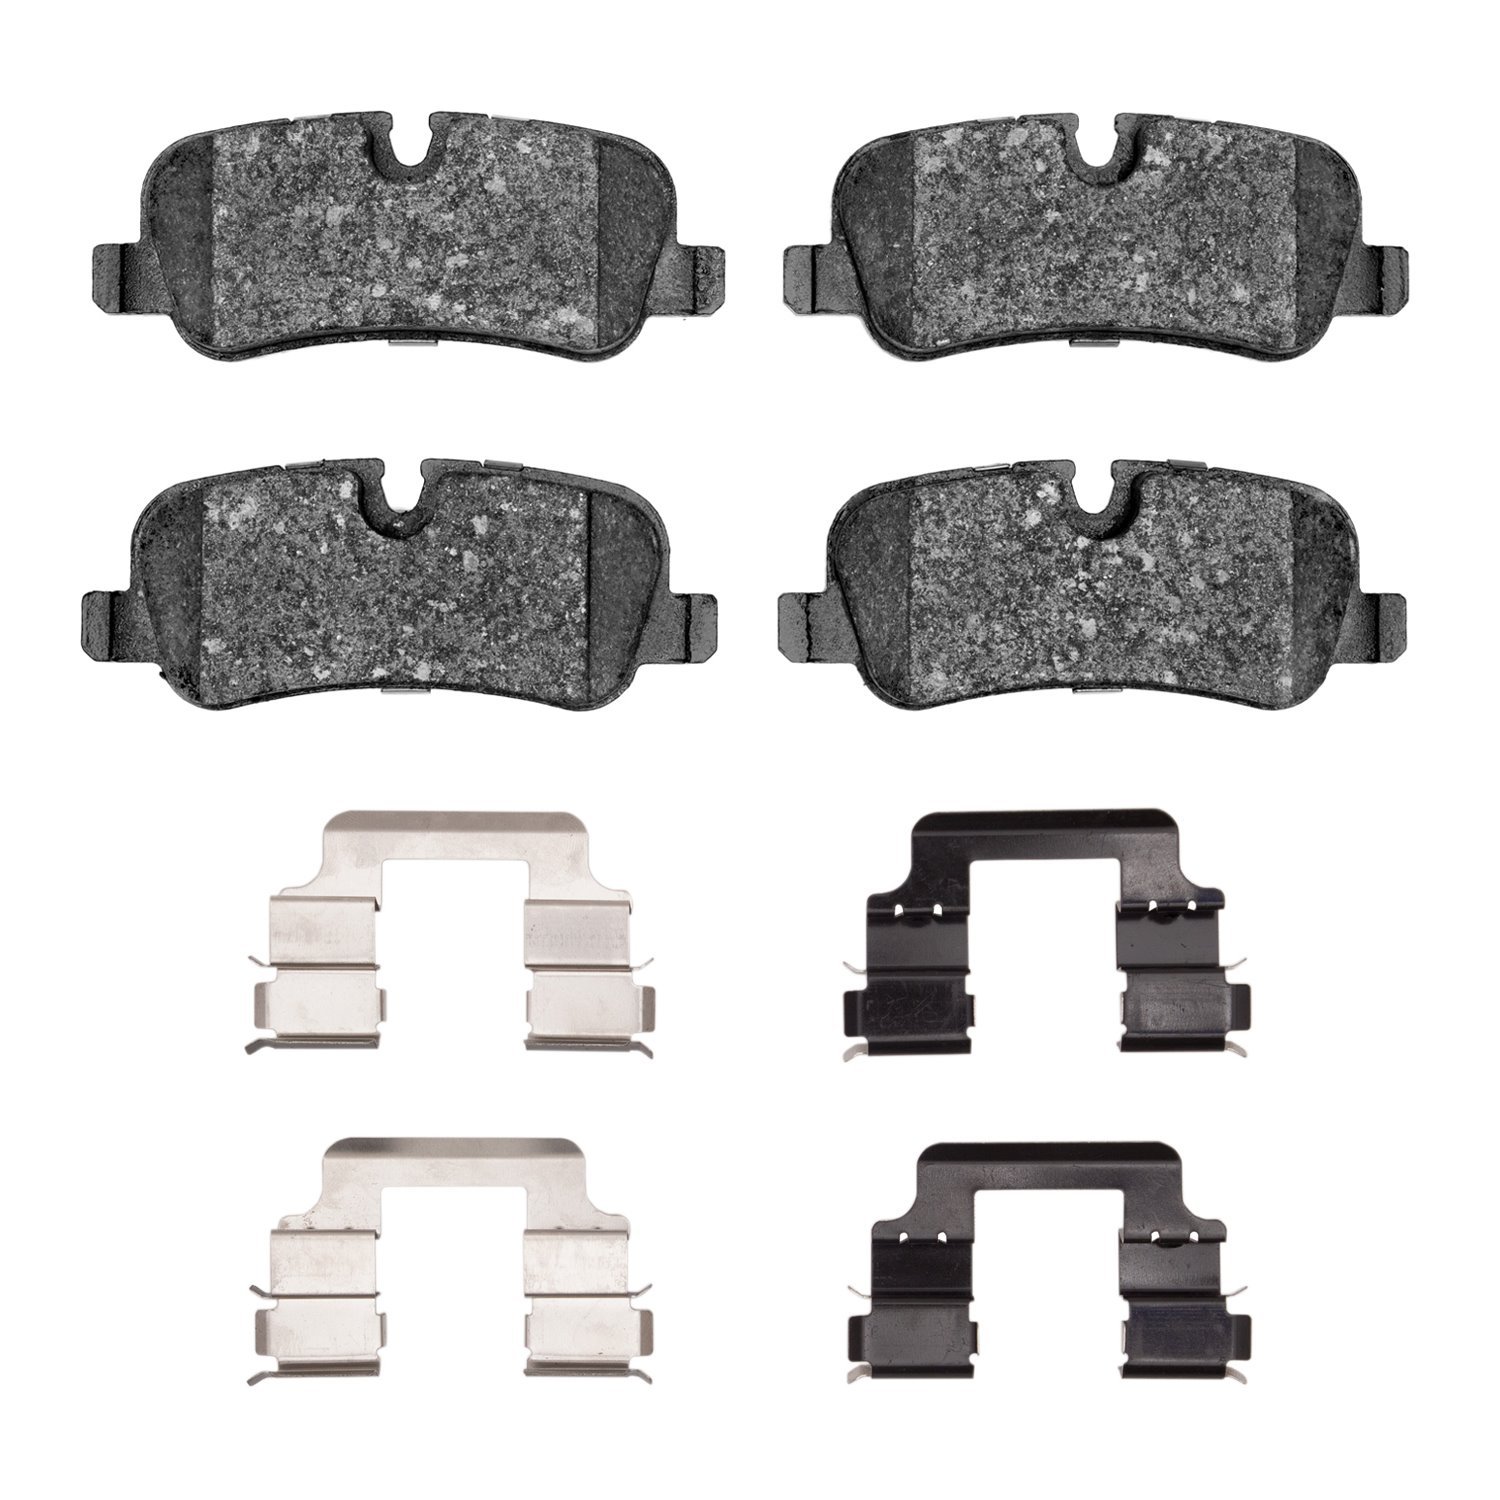 1310-1099-02 3000-Series Ceramic Brake Pads & Hardware Kit, 2005-2016 Land Rover, Position: Rear